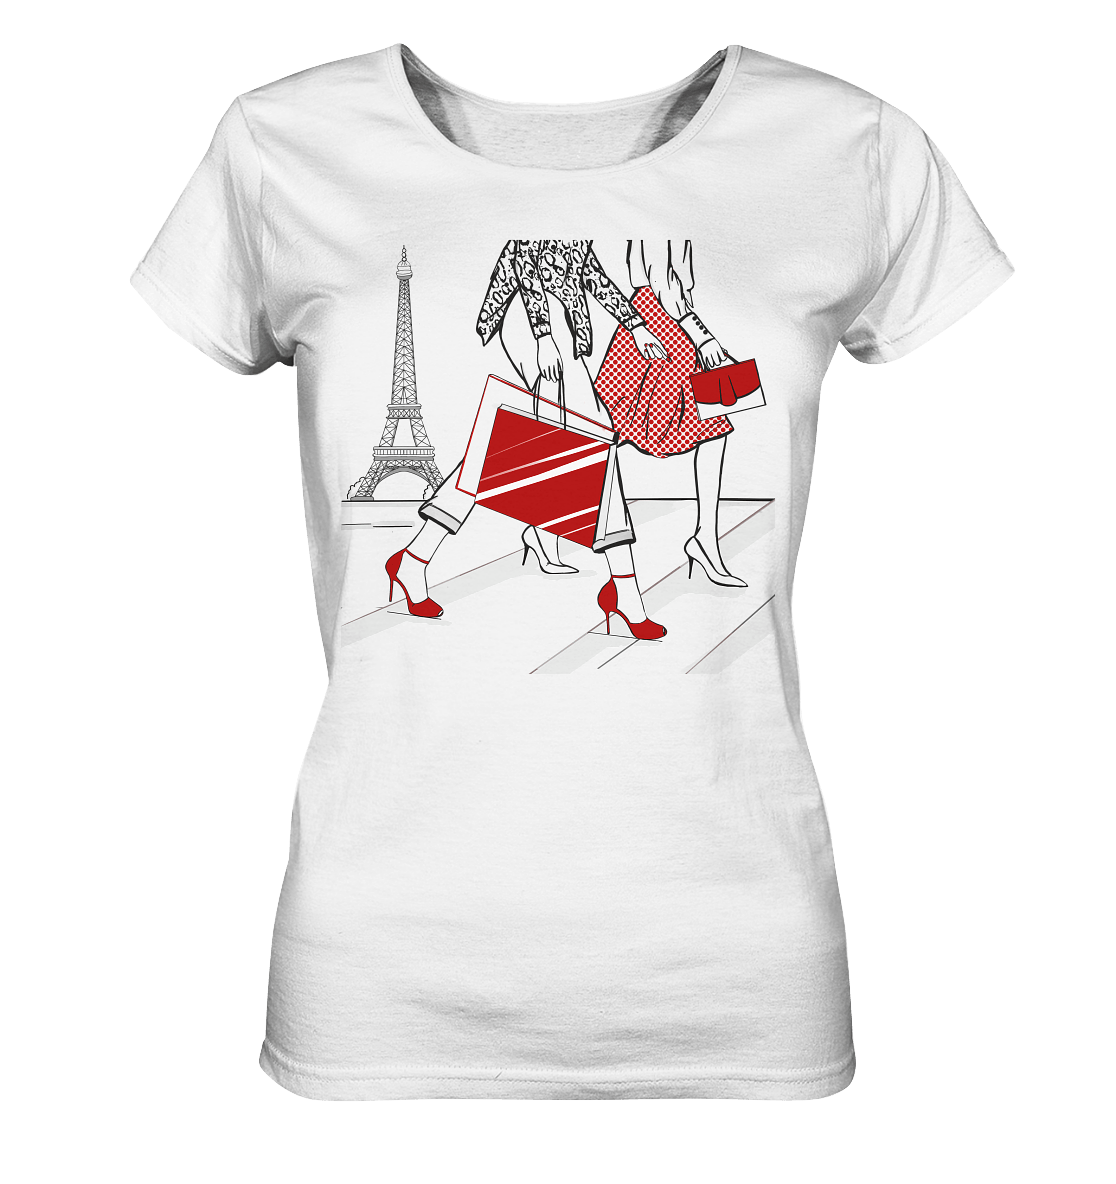 Damen T-Shirt mit Fashion Design mit Eifelturm und laufenden Damen schwarz rot weiss Sketch von Bloominic kaufen